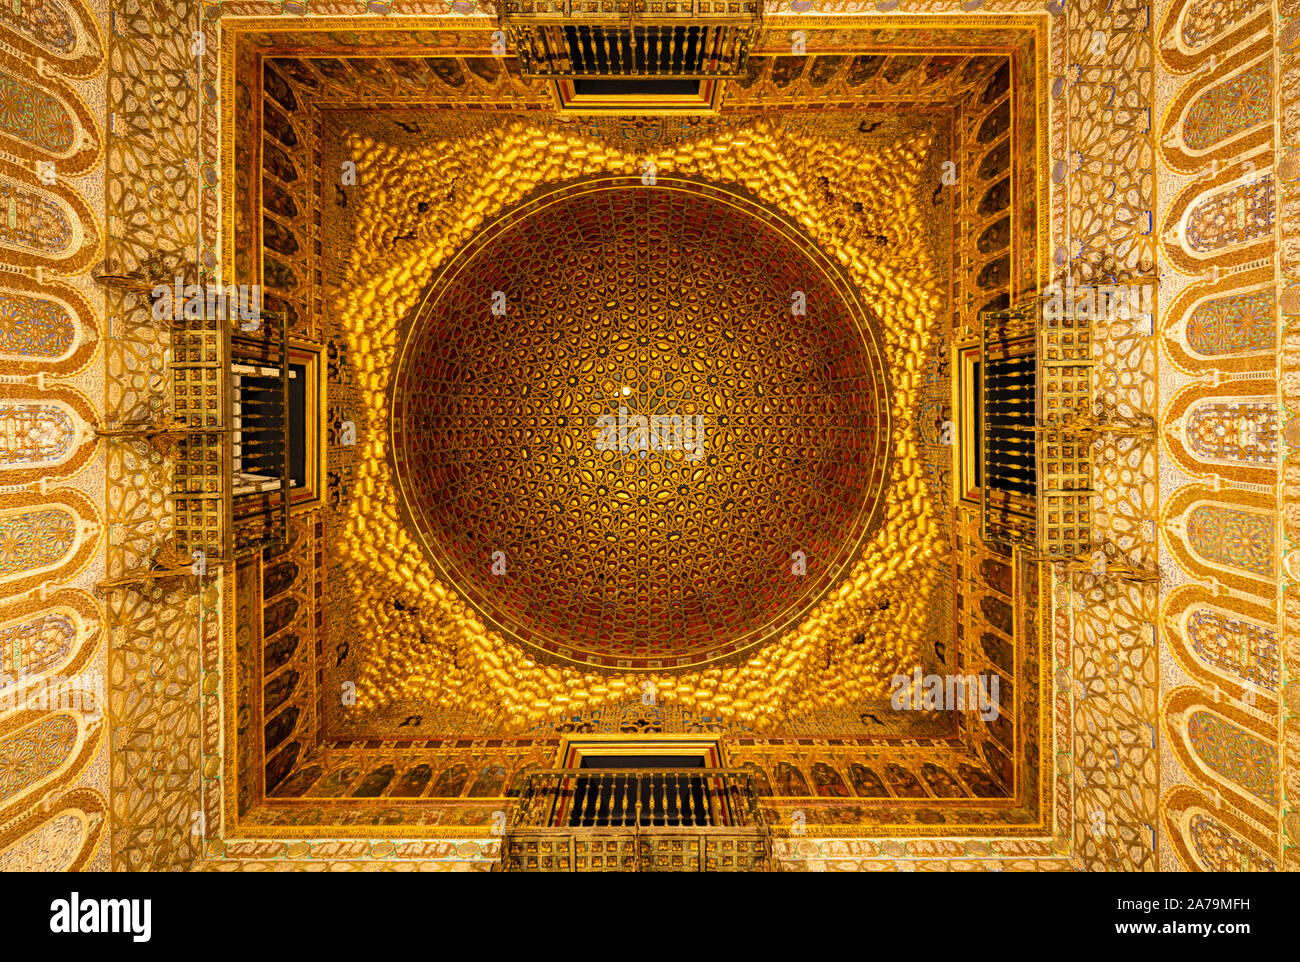 Le dôme doré plafond dans le Salón de Embajadores (Salle des Ambassadeurs) Alcazar de Séville Séville Séville Espagne Séville Andalousie Espagne eu Europe Banque D'Images